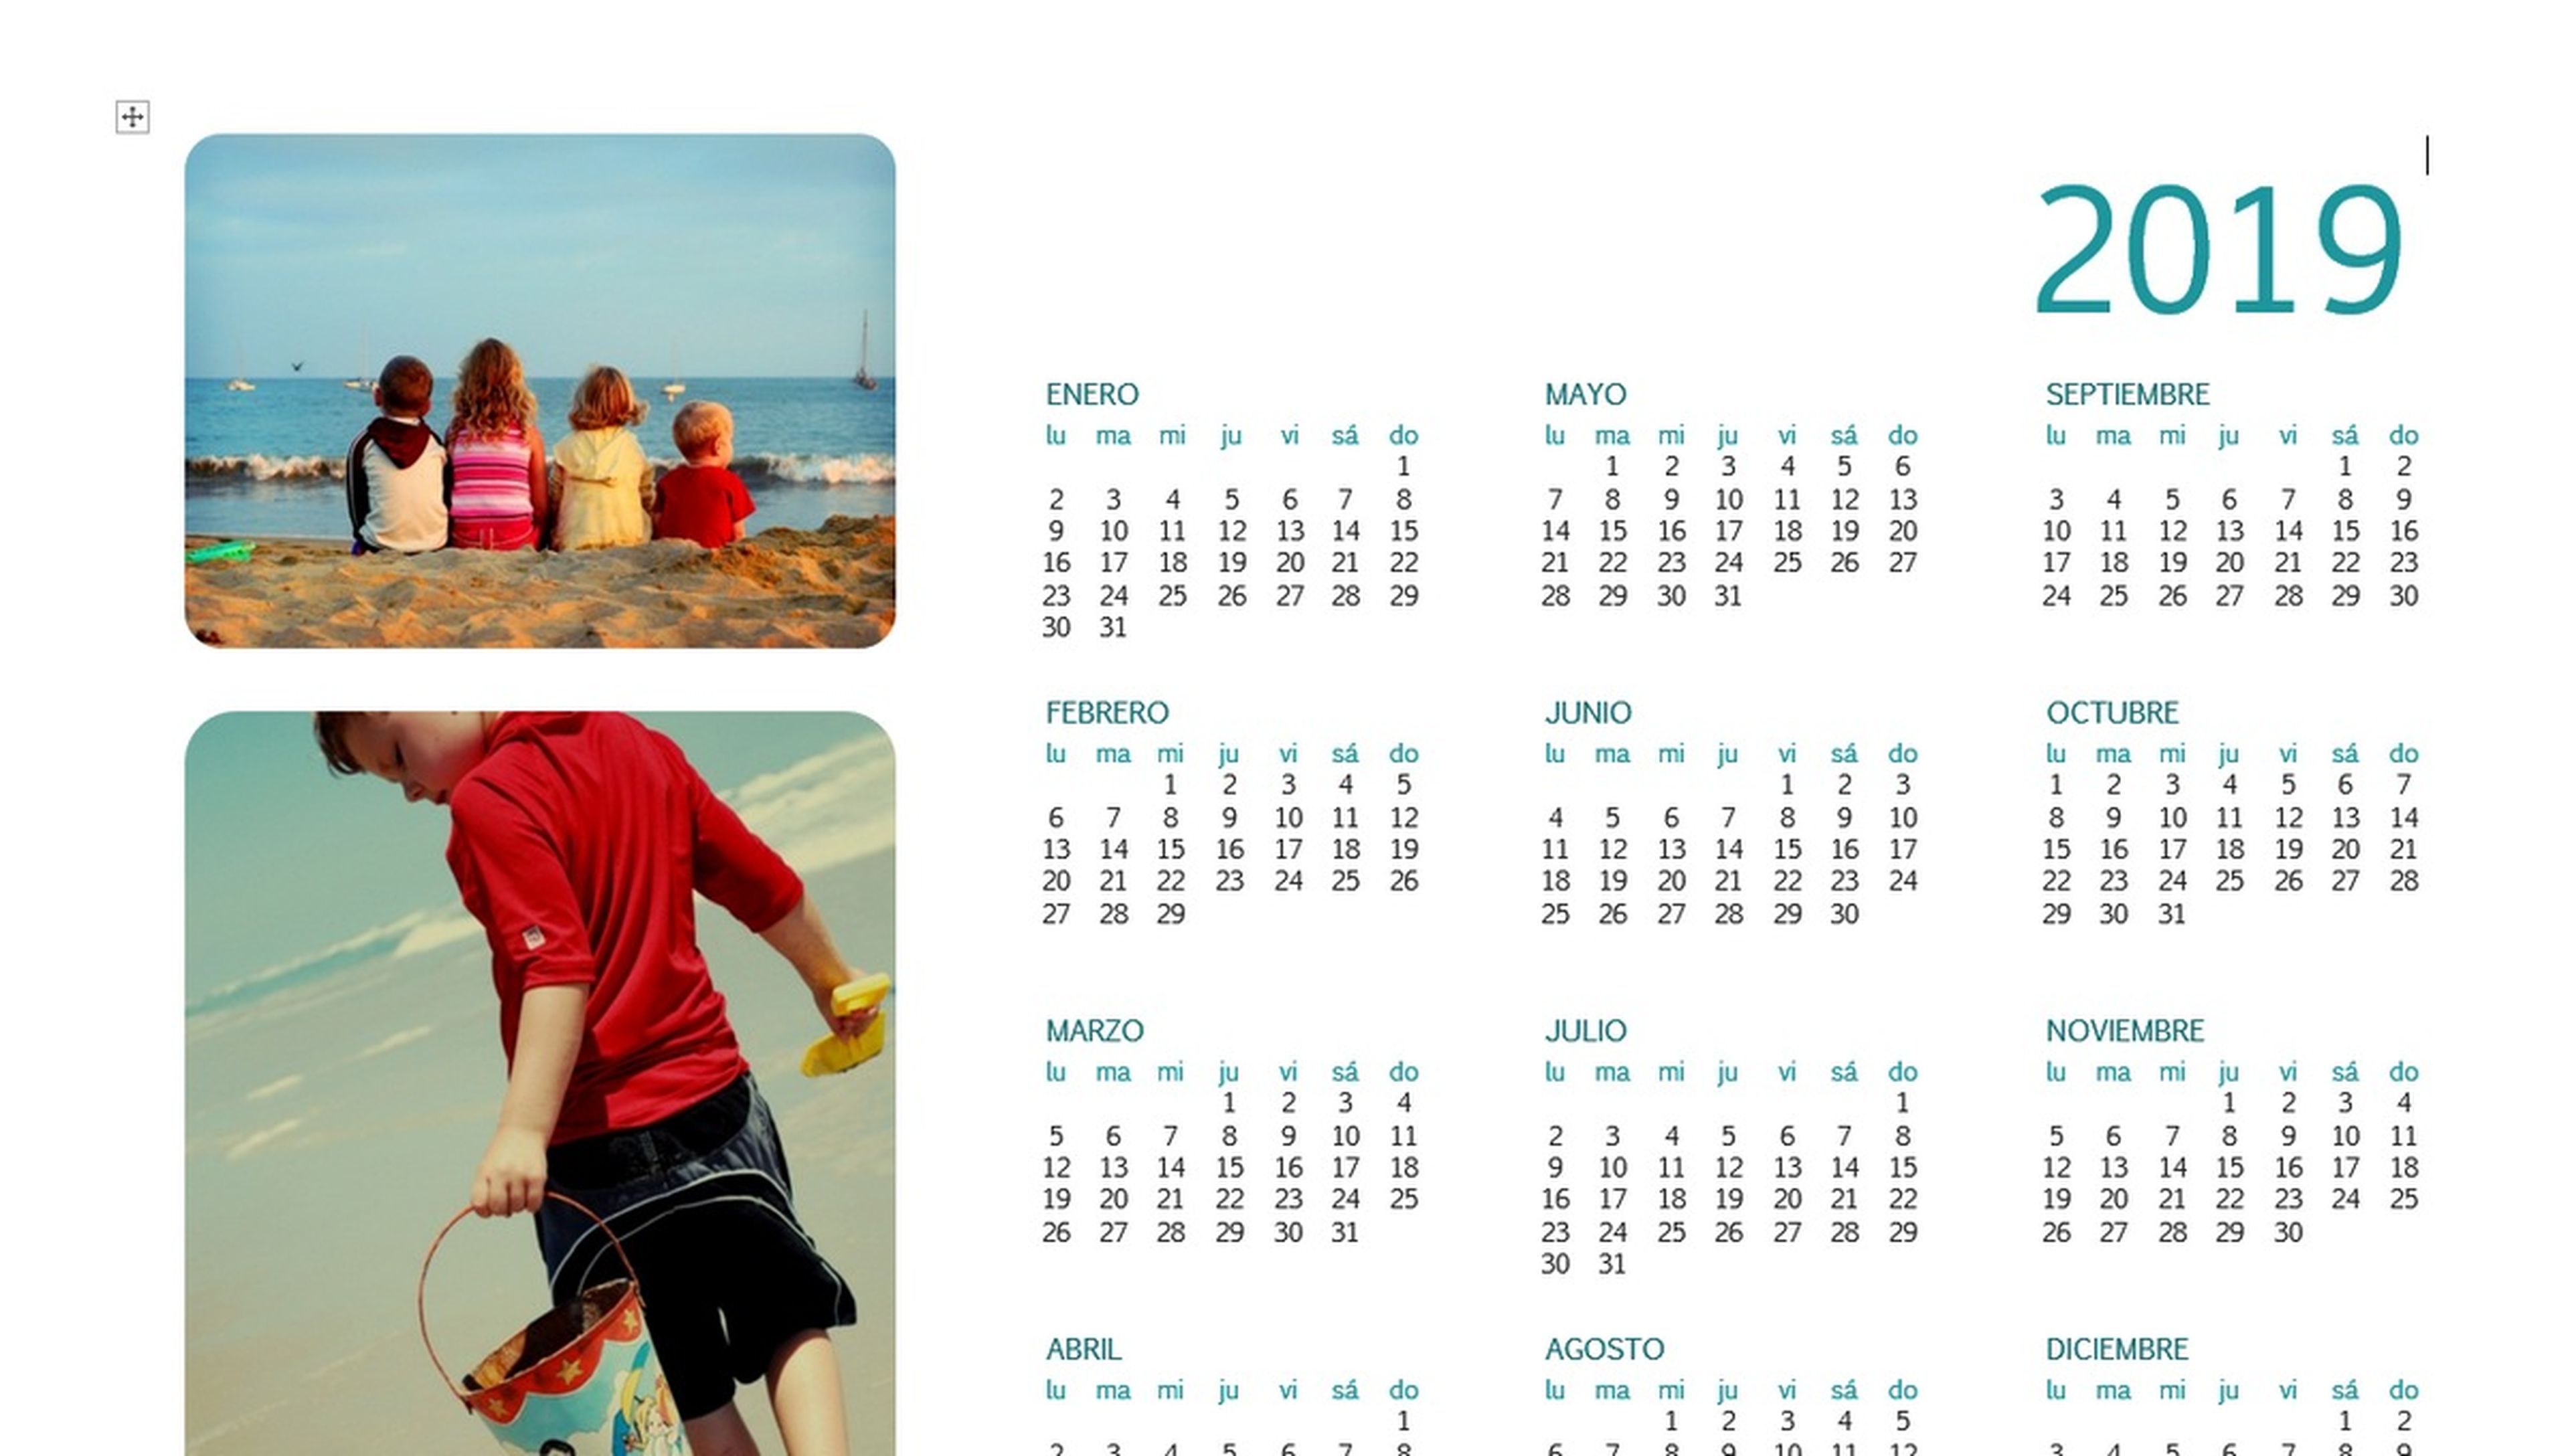 Descarga el Calendario 2019: plantillas, imágenes y diferentes formatos